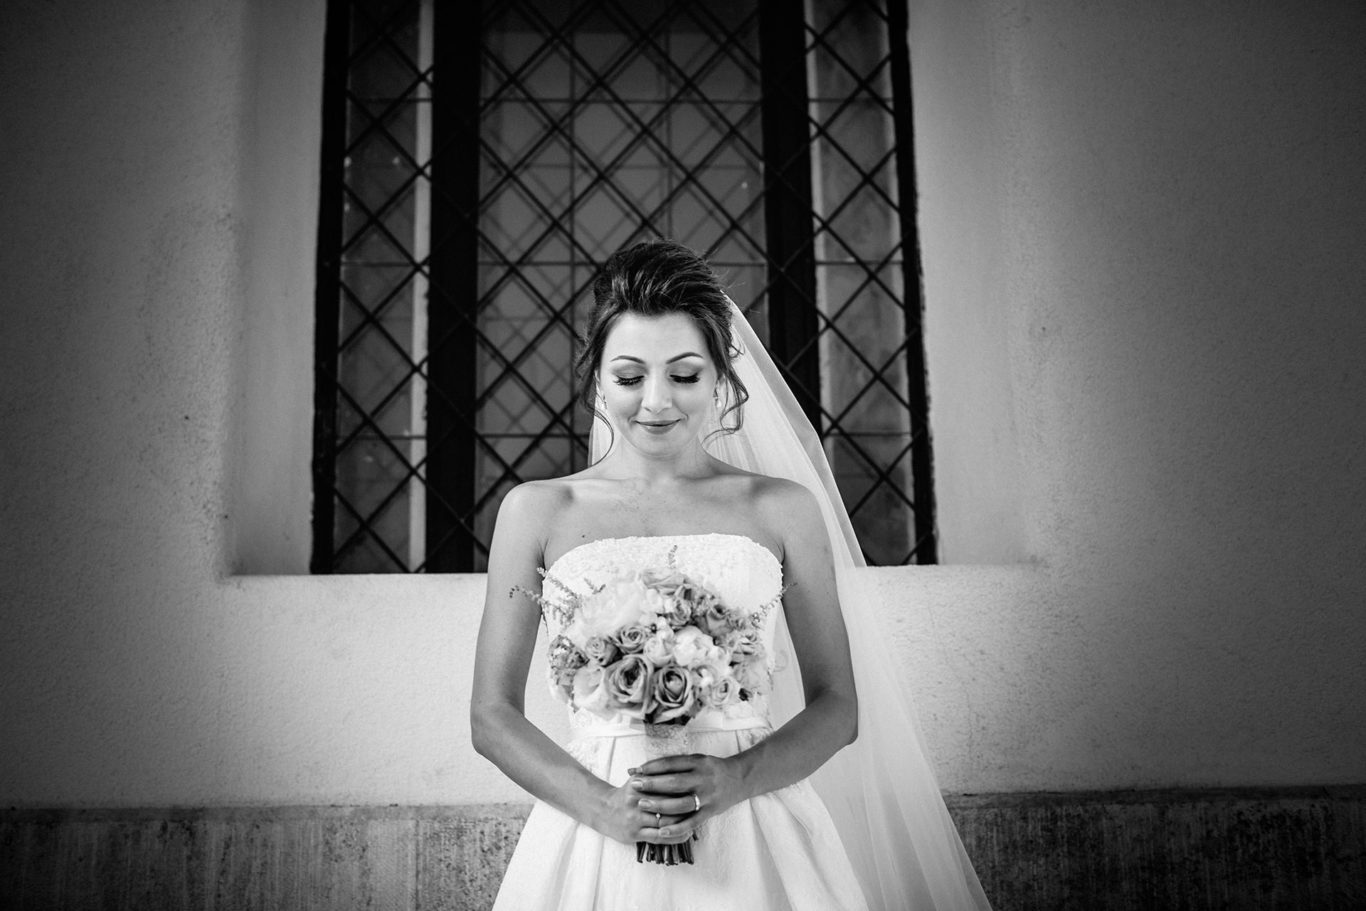 Nunta La Seratta - Adriana & Dan - fotograf Ciprian Dumitrescu - fotografie documentara de nunta si familie - fotograf Bucuresti